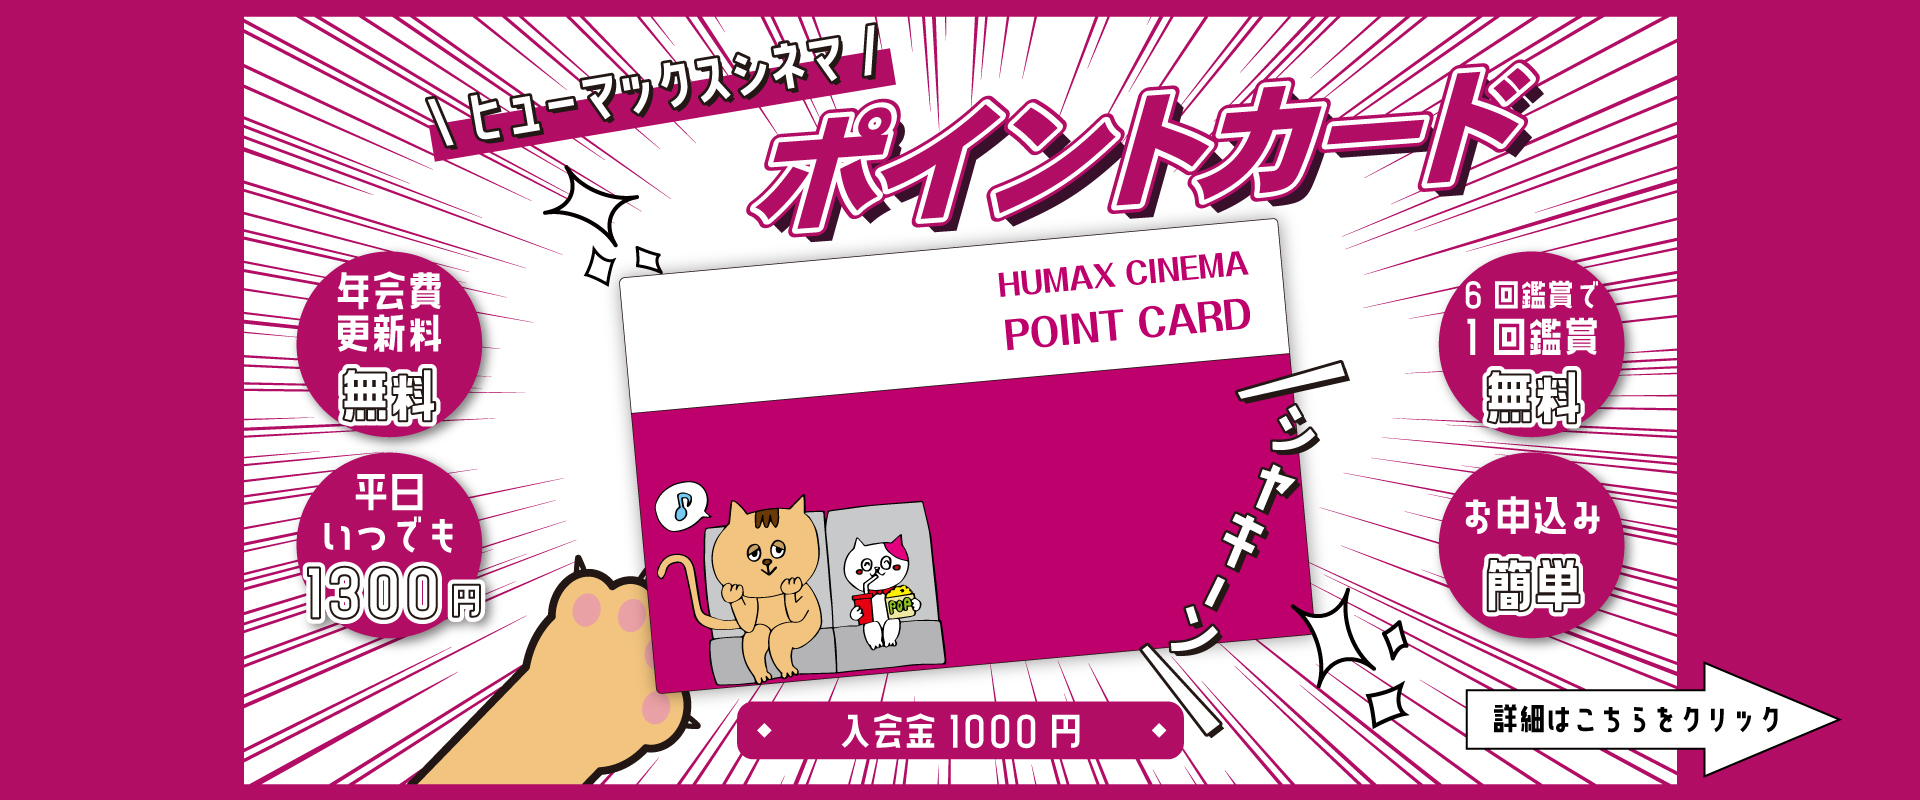 成田humaxシネマズ ヒューマックスシネマ humax cinema 映画館